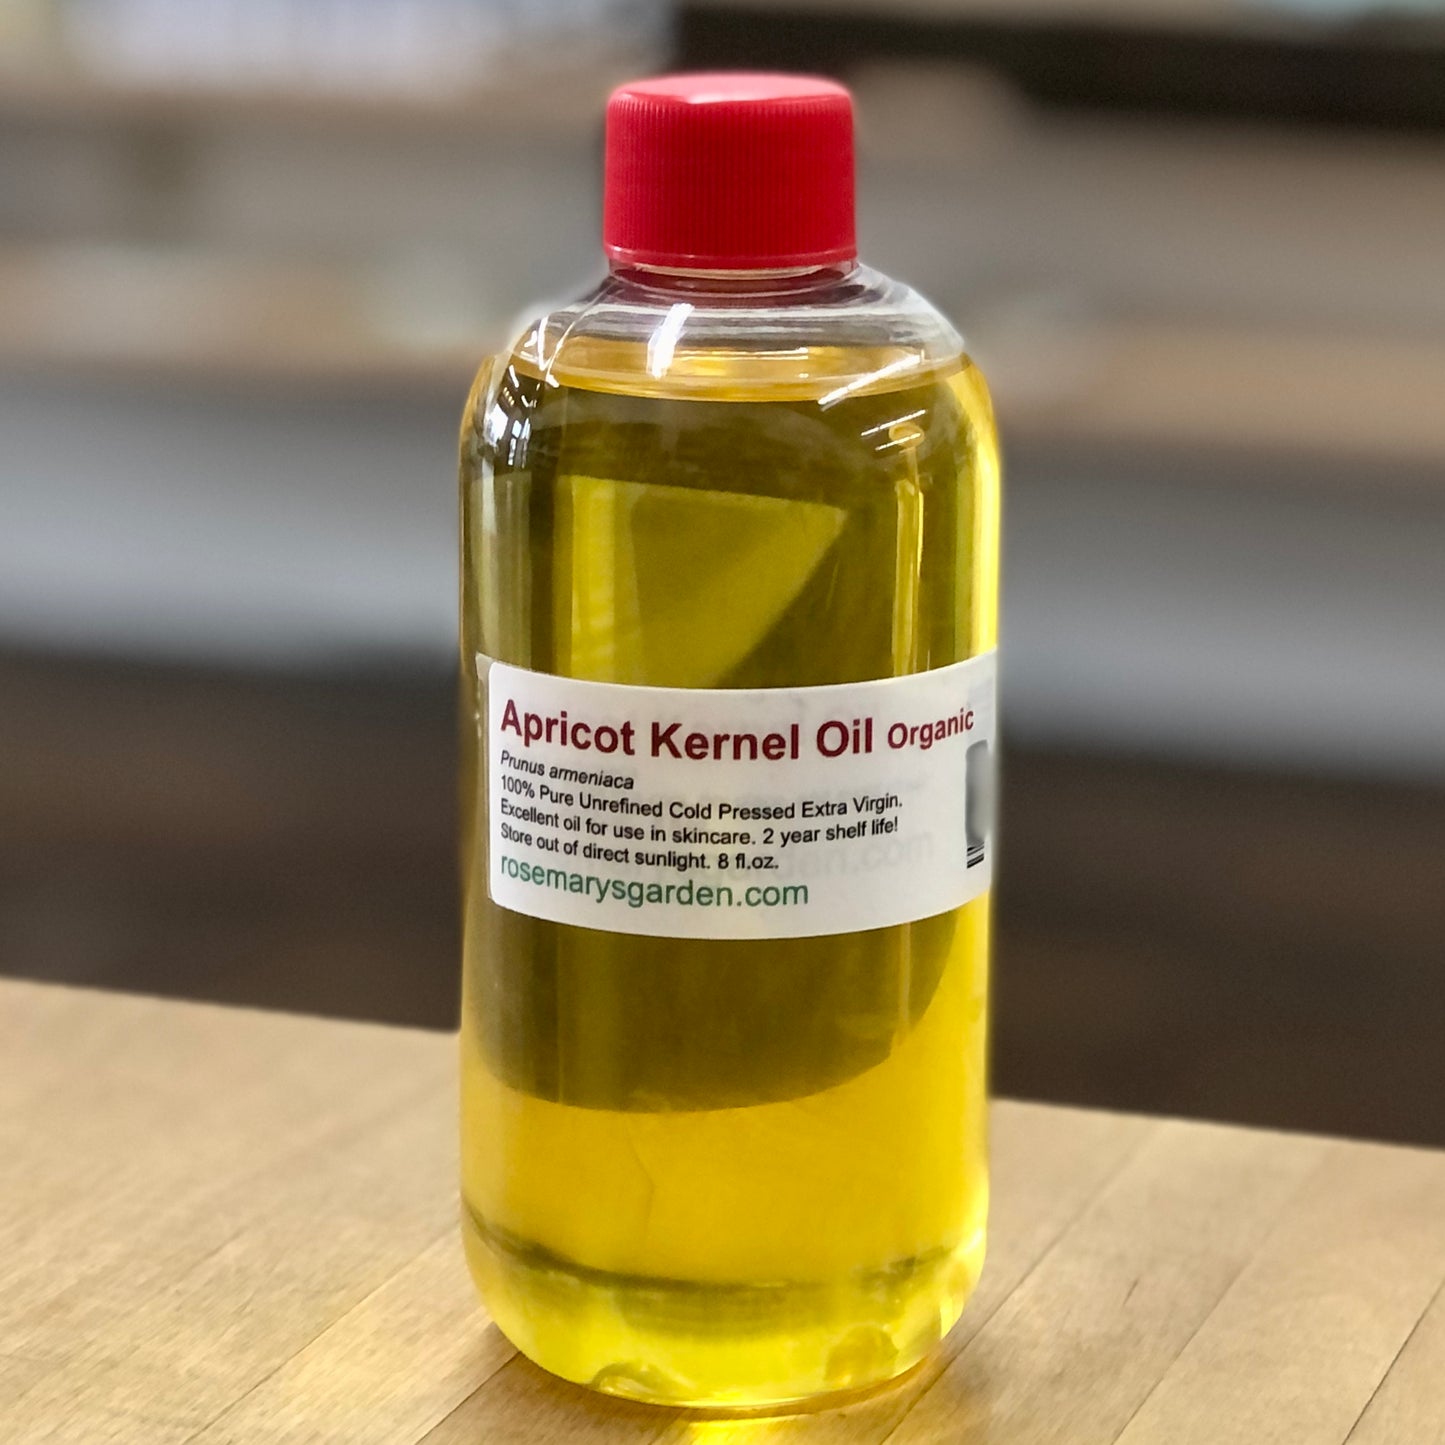 Apricot Kernel Oil Organic 8 fl.oz.